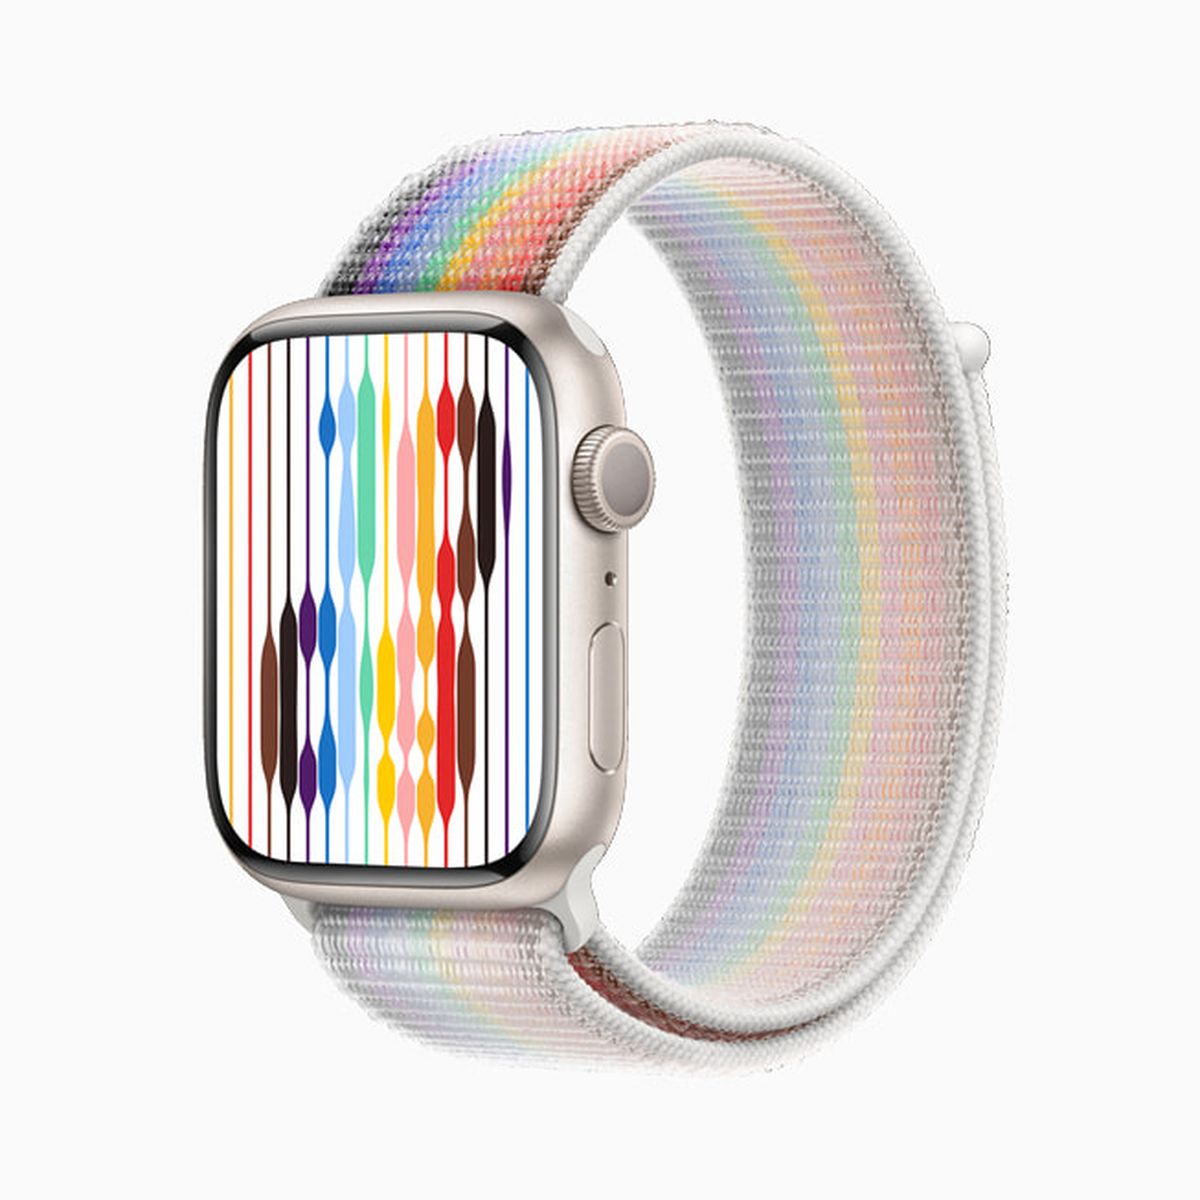 apple pride 02 - Apple mostra i nuovi cinturini per Apple Watch Pride Edition